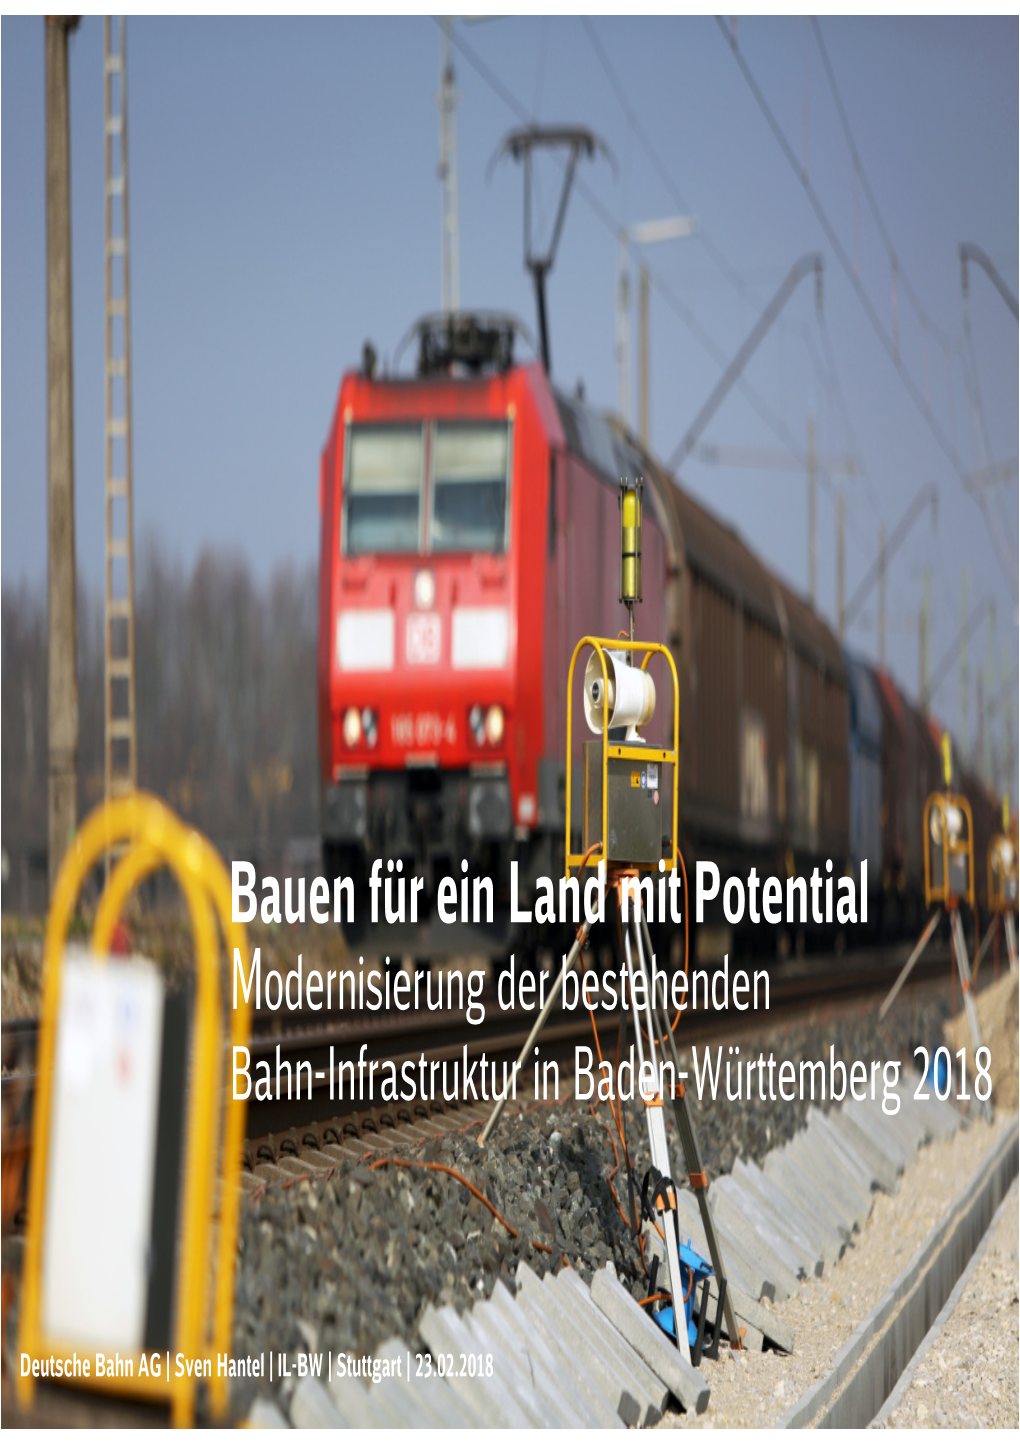 Bahn-Infrastruktur in Baden-Württemberg 2018